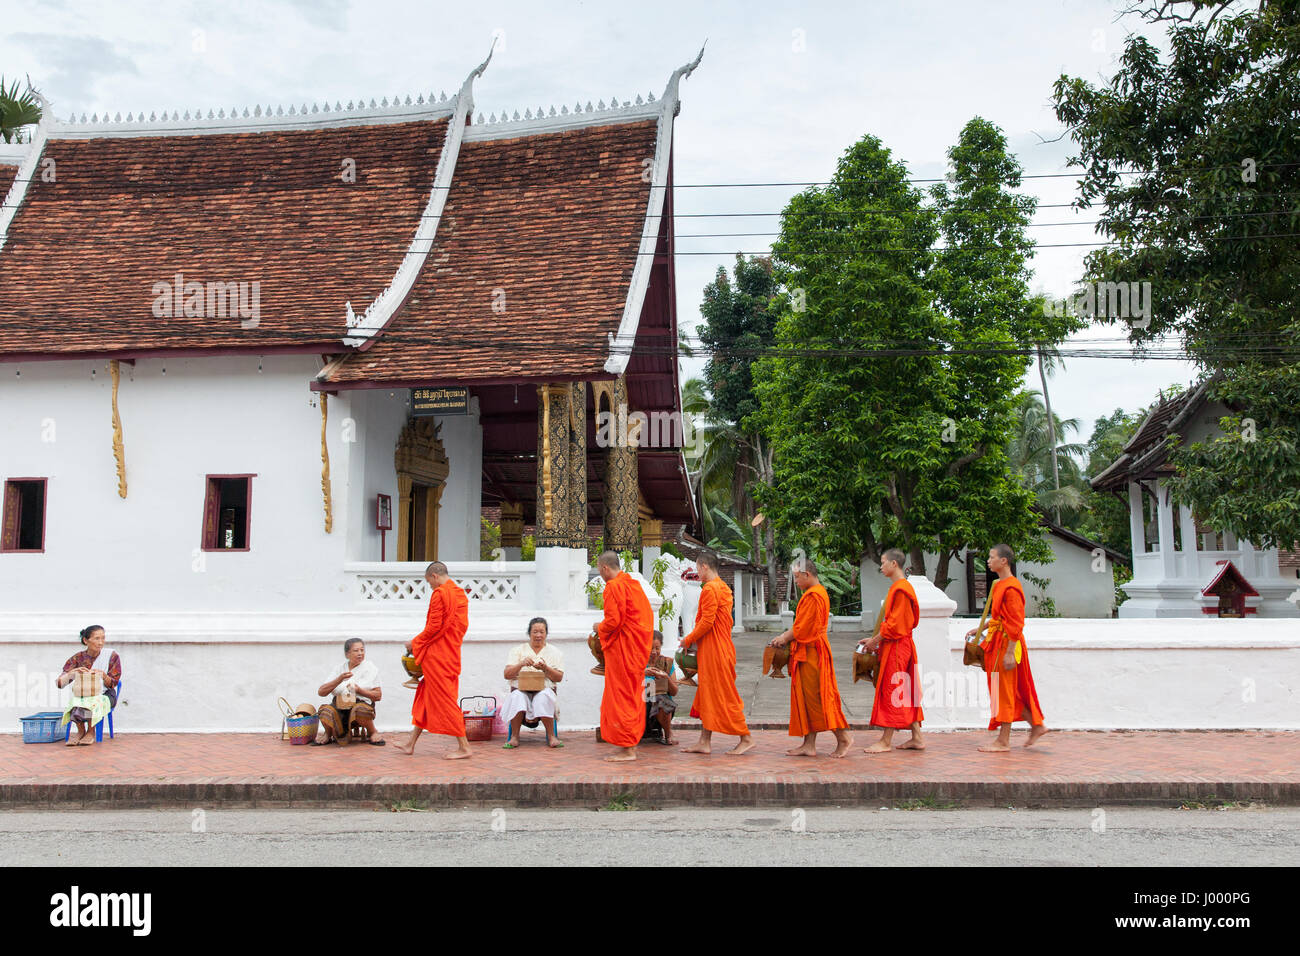 Luang Prabang, Laos - 22 Giugno 2014: i monaci buddisti raccogliendo elemosine da persone sulla strada di Luang Prabang, Laos il 22 giugno, 2014. Foto Stock